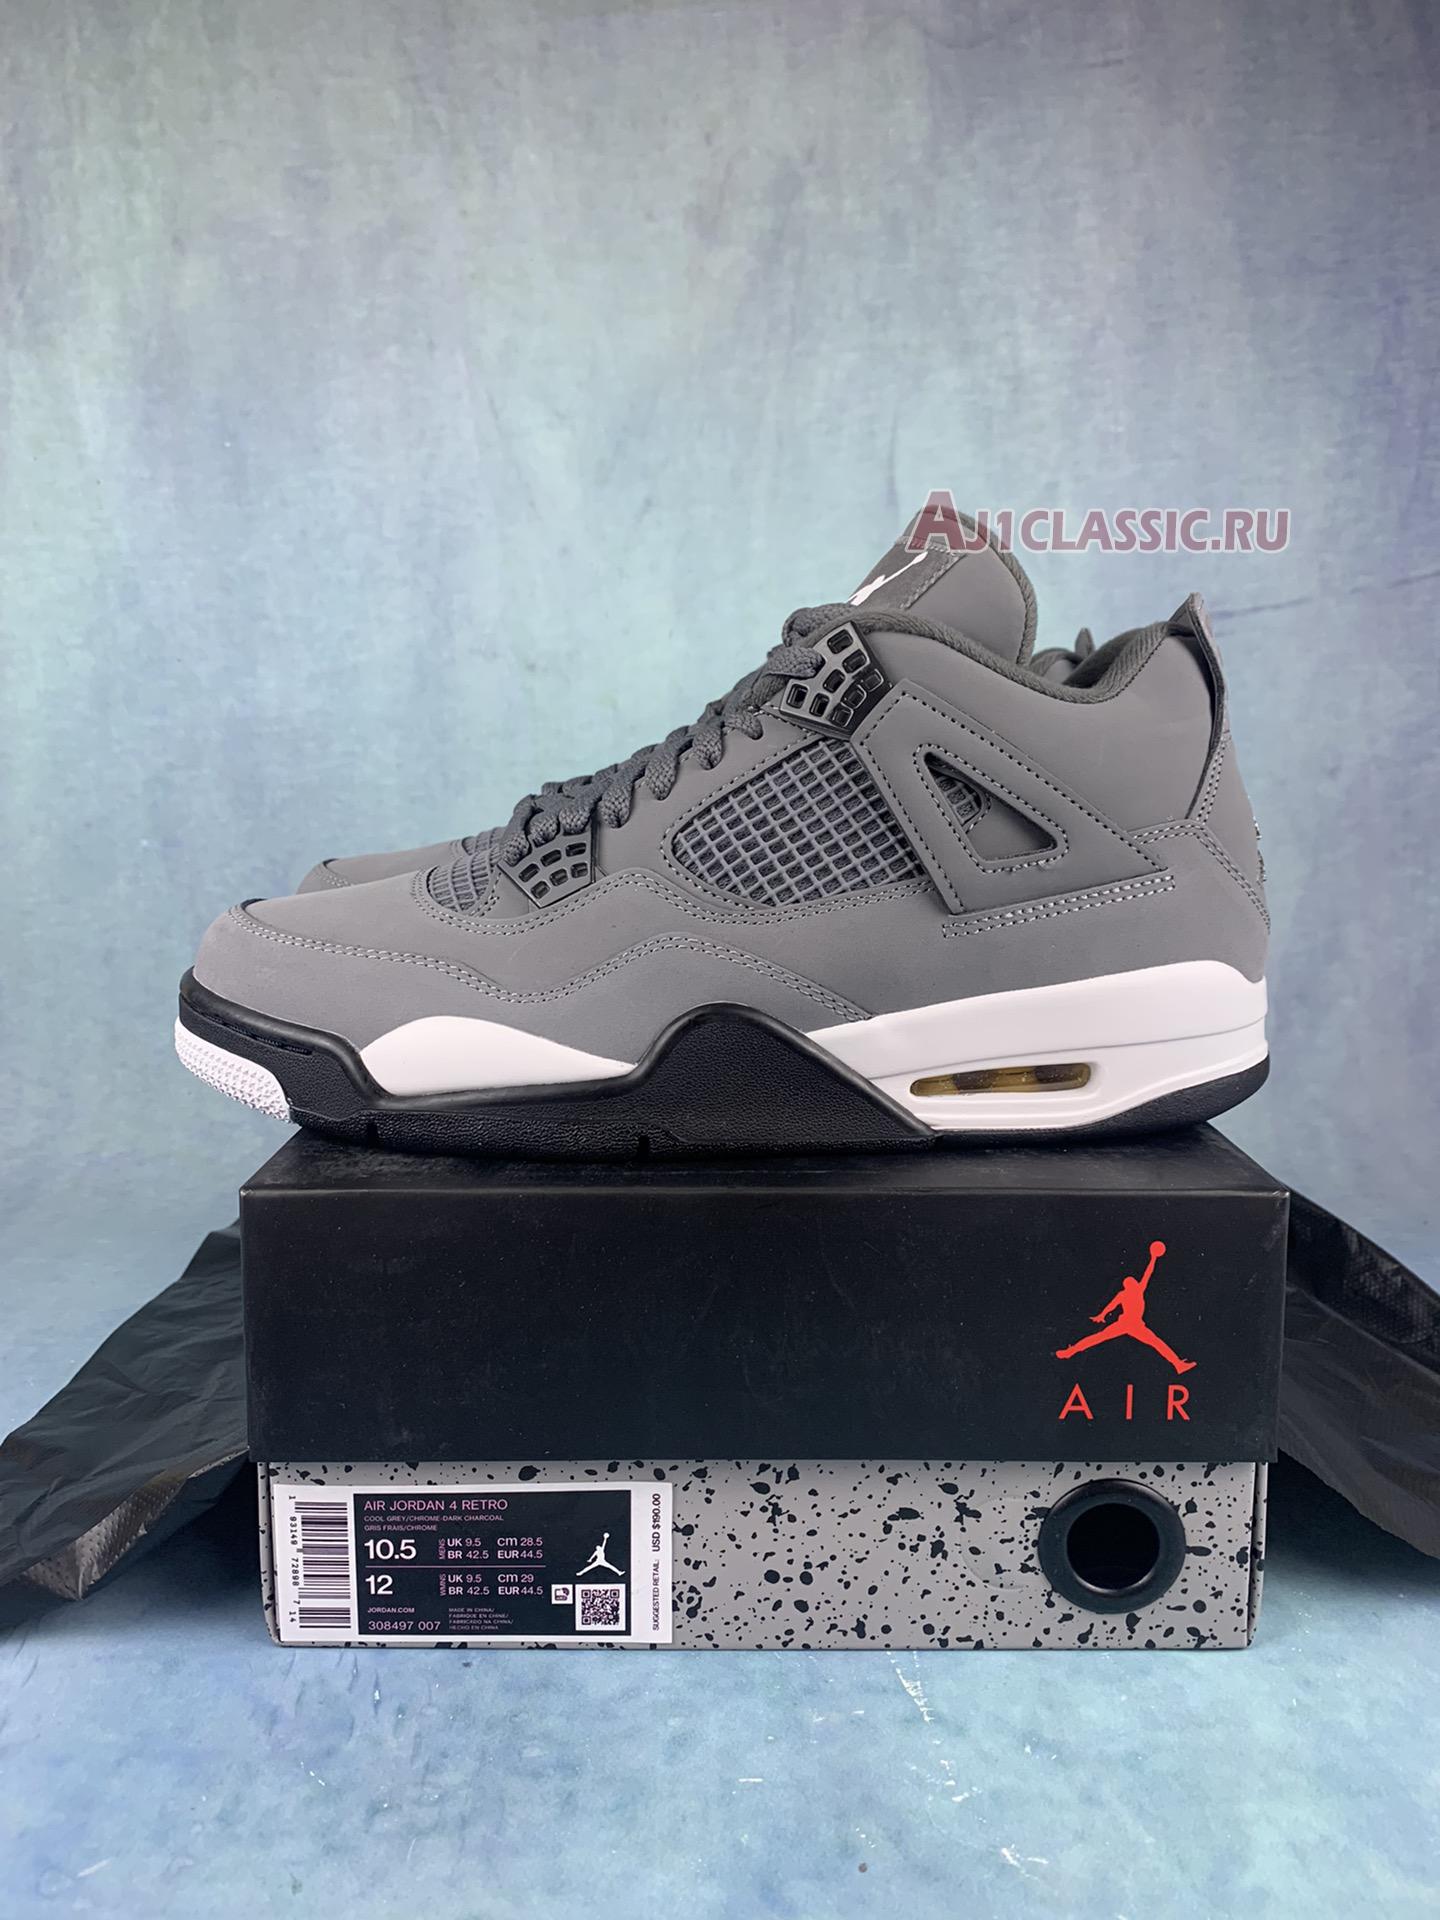 Air Jordan 4 Retro Cool Grey 308497-007-2 Cool Grey/Chrome-Dark Charcoal Sneakers